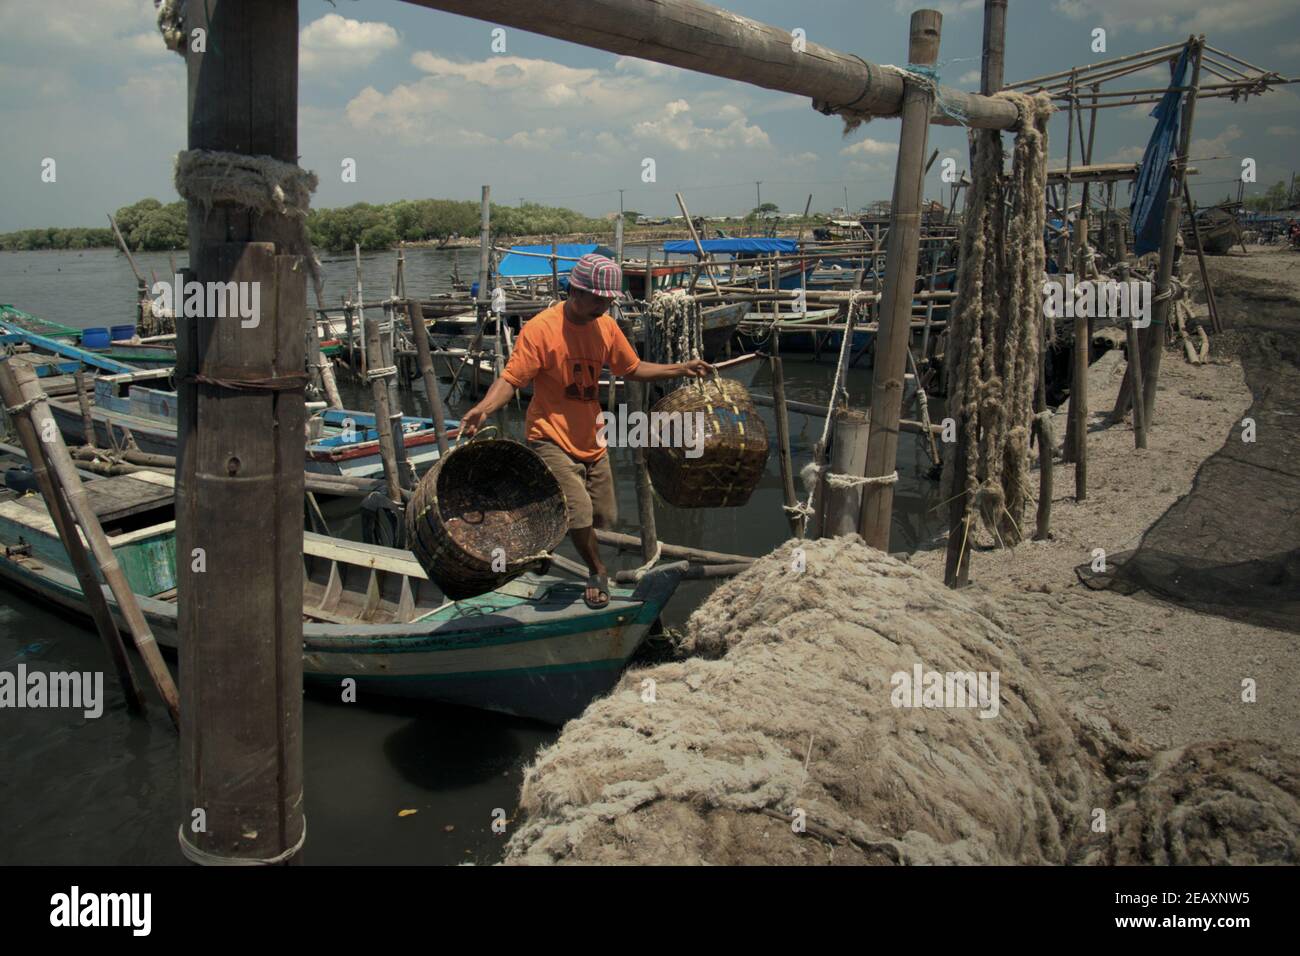 Un travailleur marchant sur un bateau après avoir lavé des paniers en rotin sur la plage d'atterrissage de Kamal Muara, un village de pêcheurs également connu sous le nom de centre de production de moules vertes dans la zone côtière de Jakarta, en Indonésie. Banque D'Images